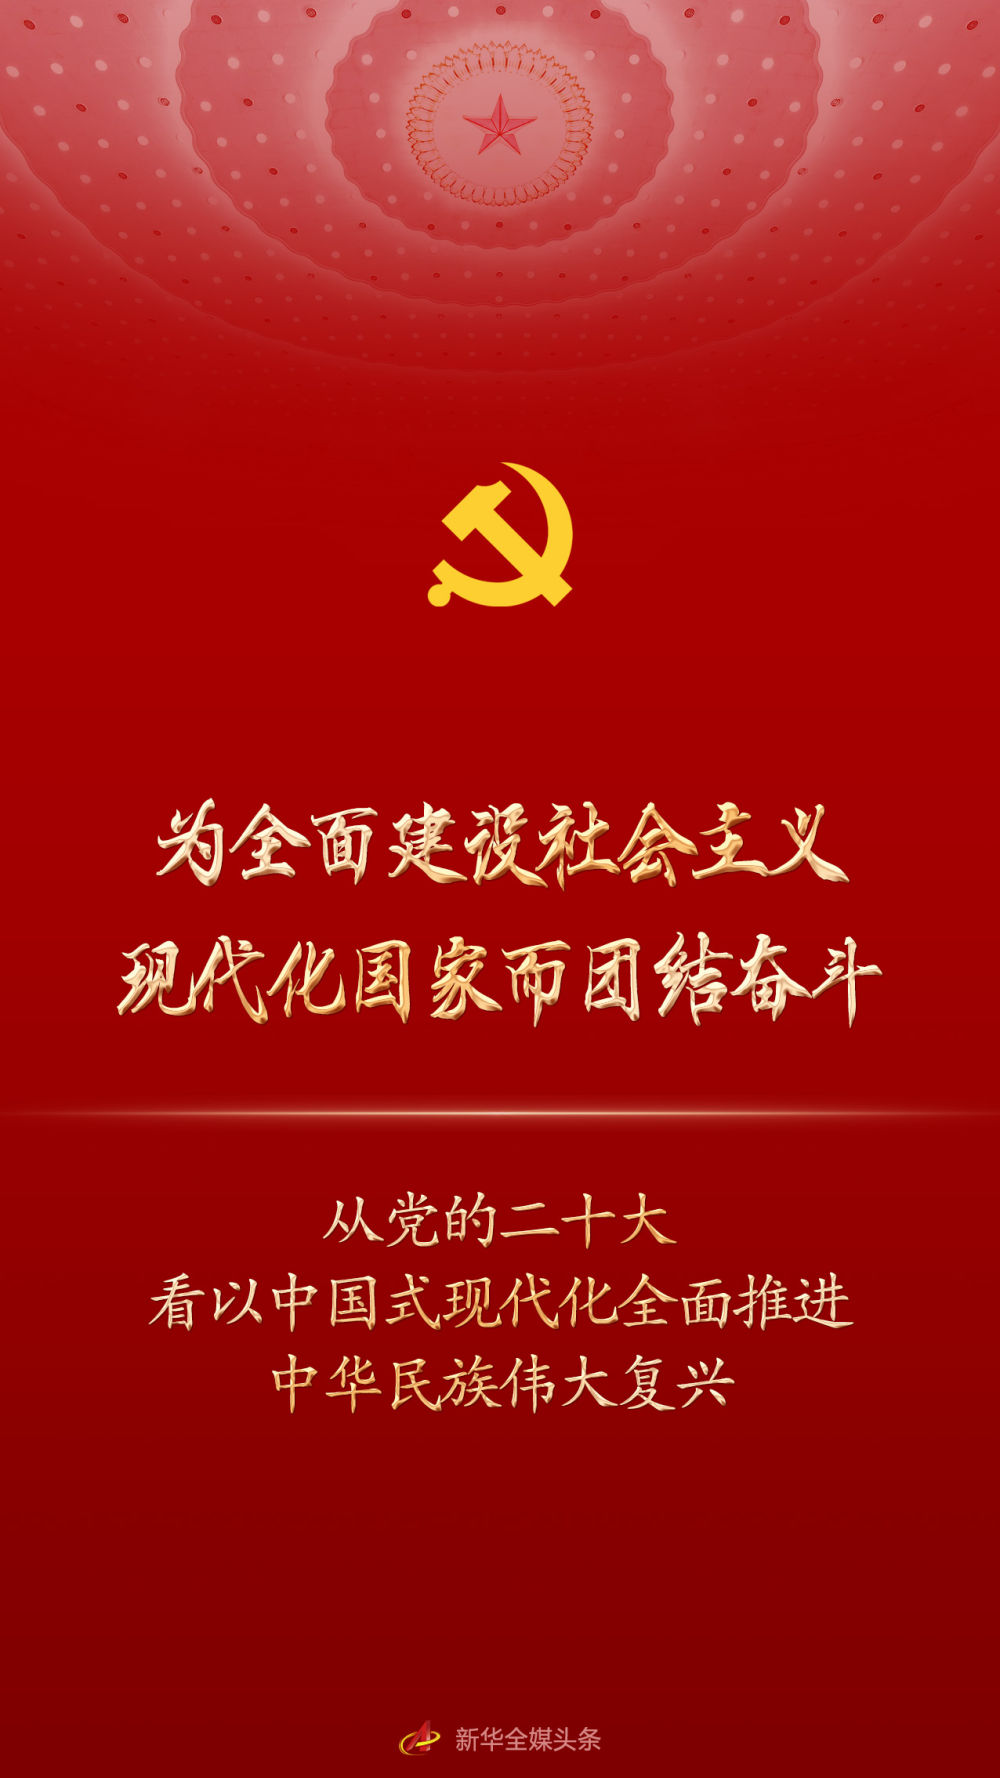 為全面建設社會主義現代化國家而團結奮斗——從黨的二十大看以中國式現代化全面推進中華民族偉大復興